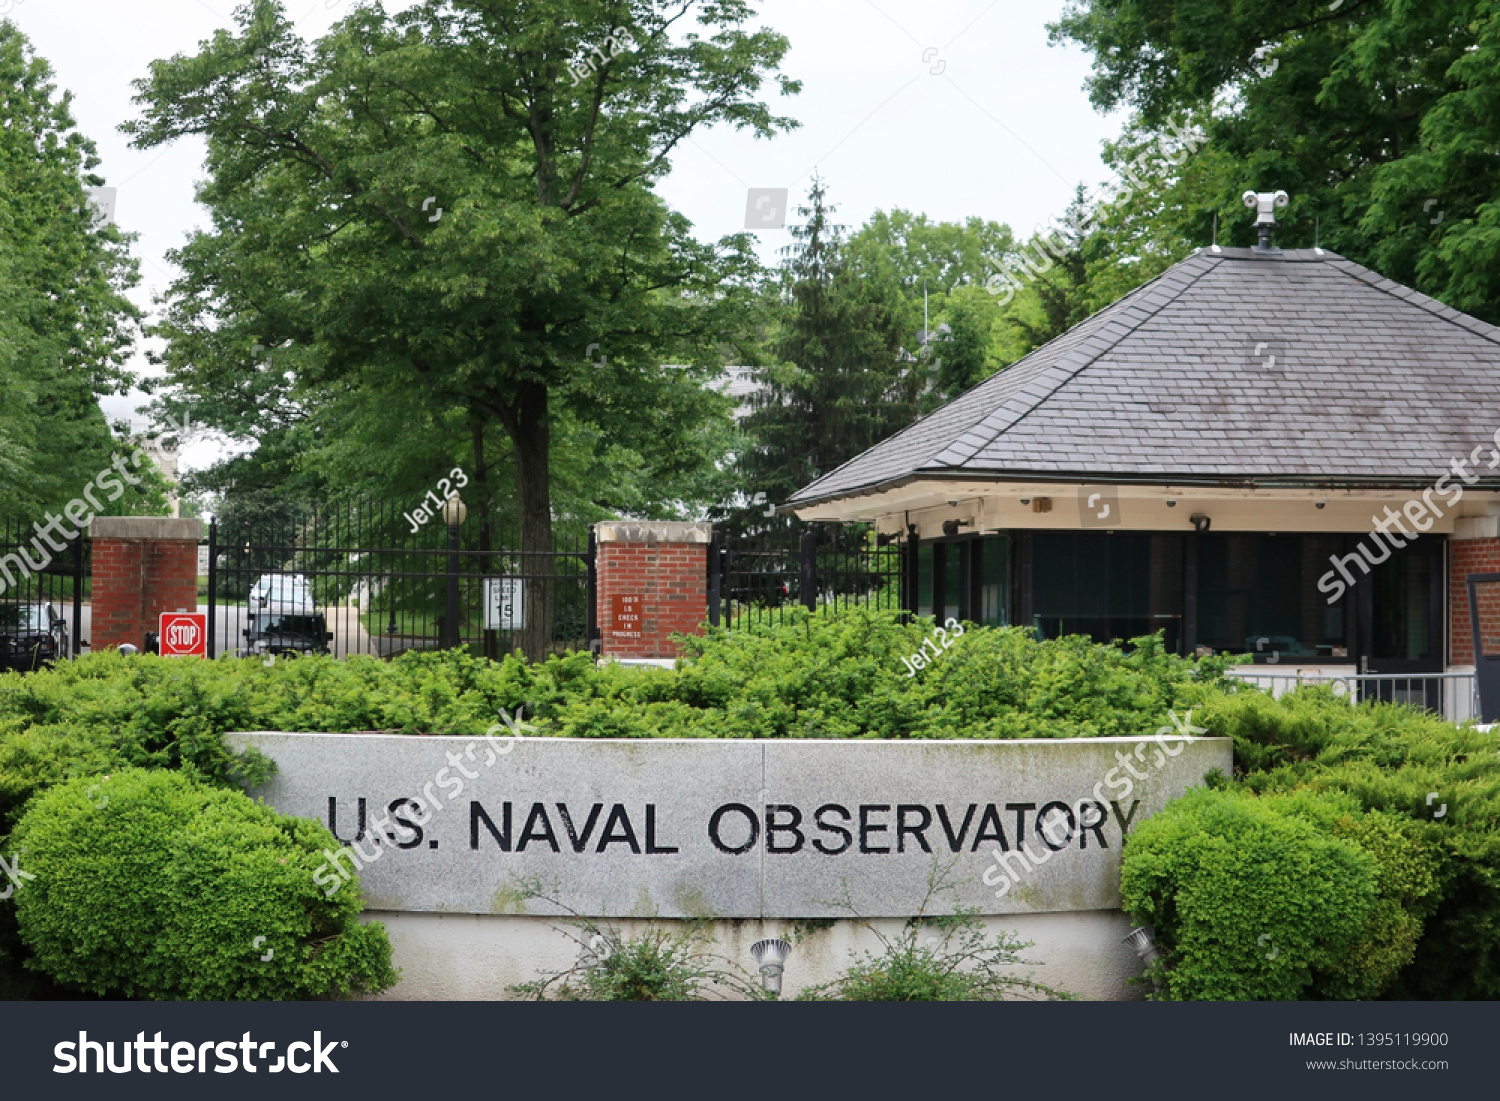 WASHINGTON, DC - MAY 11, 2019: US NAVAL OBSERVATORY - sign at entrance